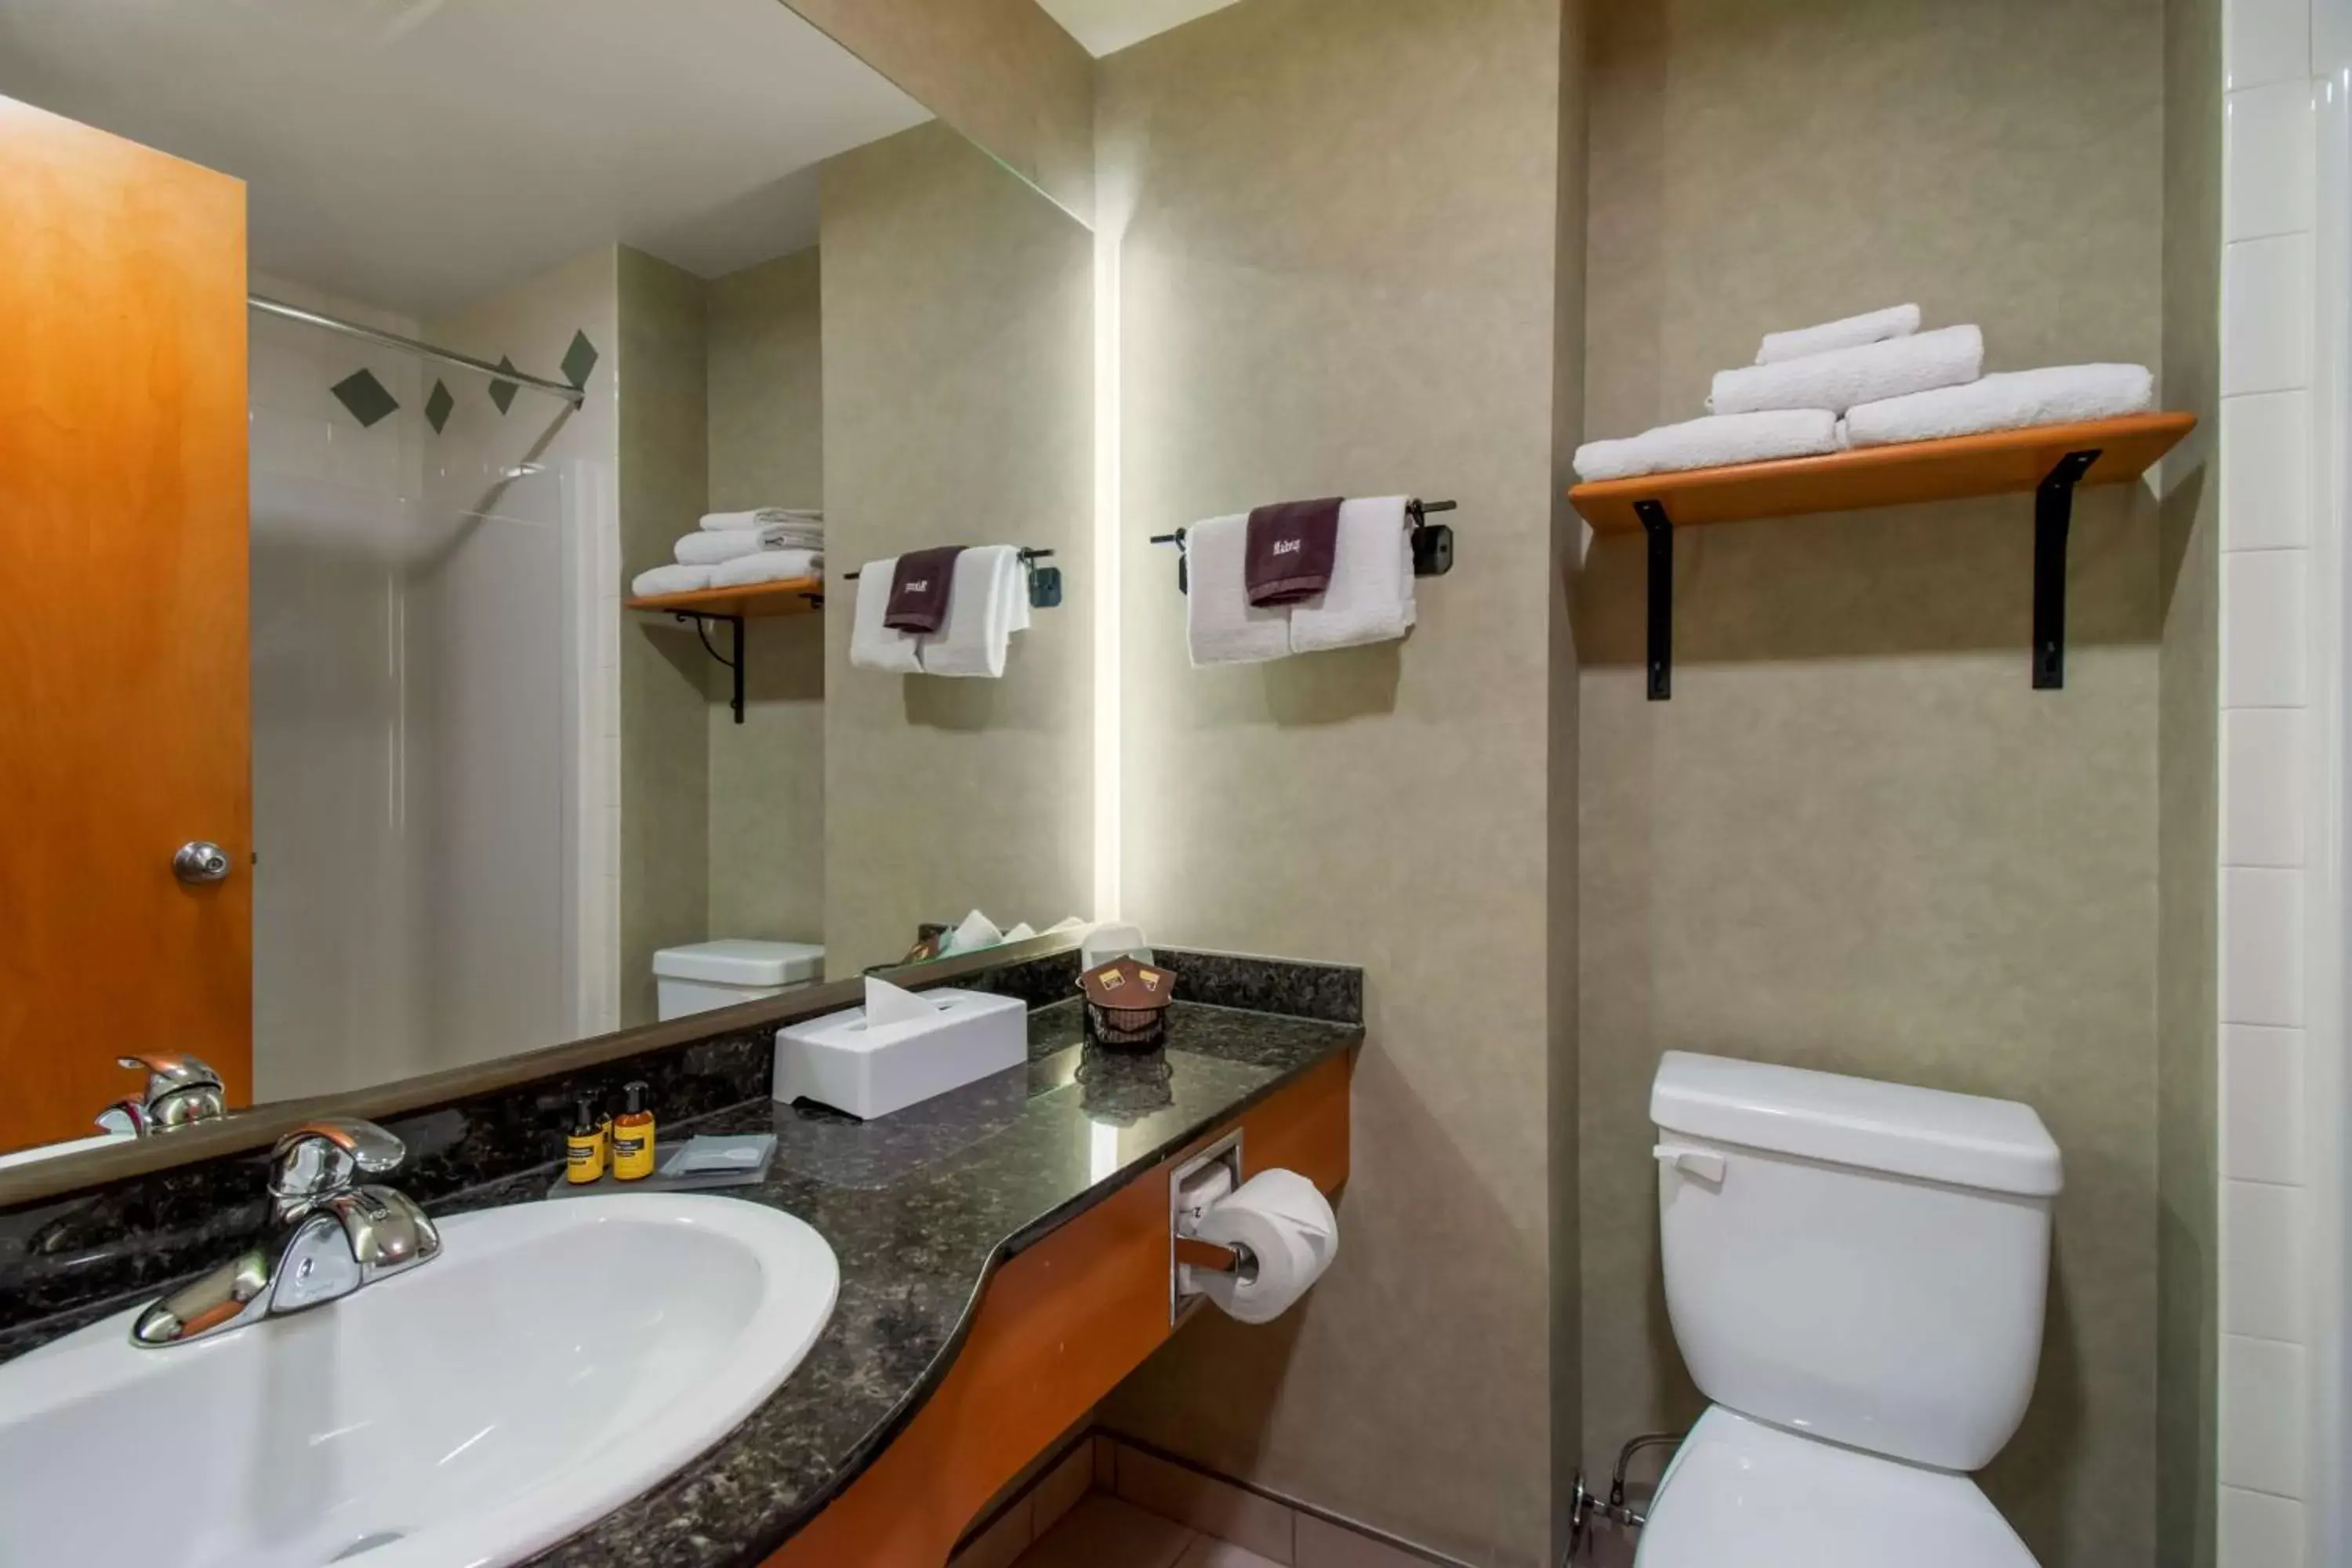 Bedroom, Bathroom in BEST WESTERN PLUS Valemount Inn & Suites